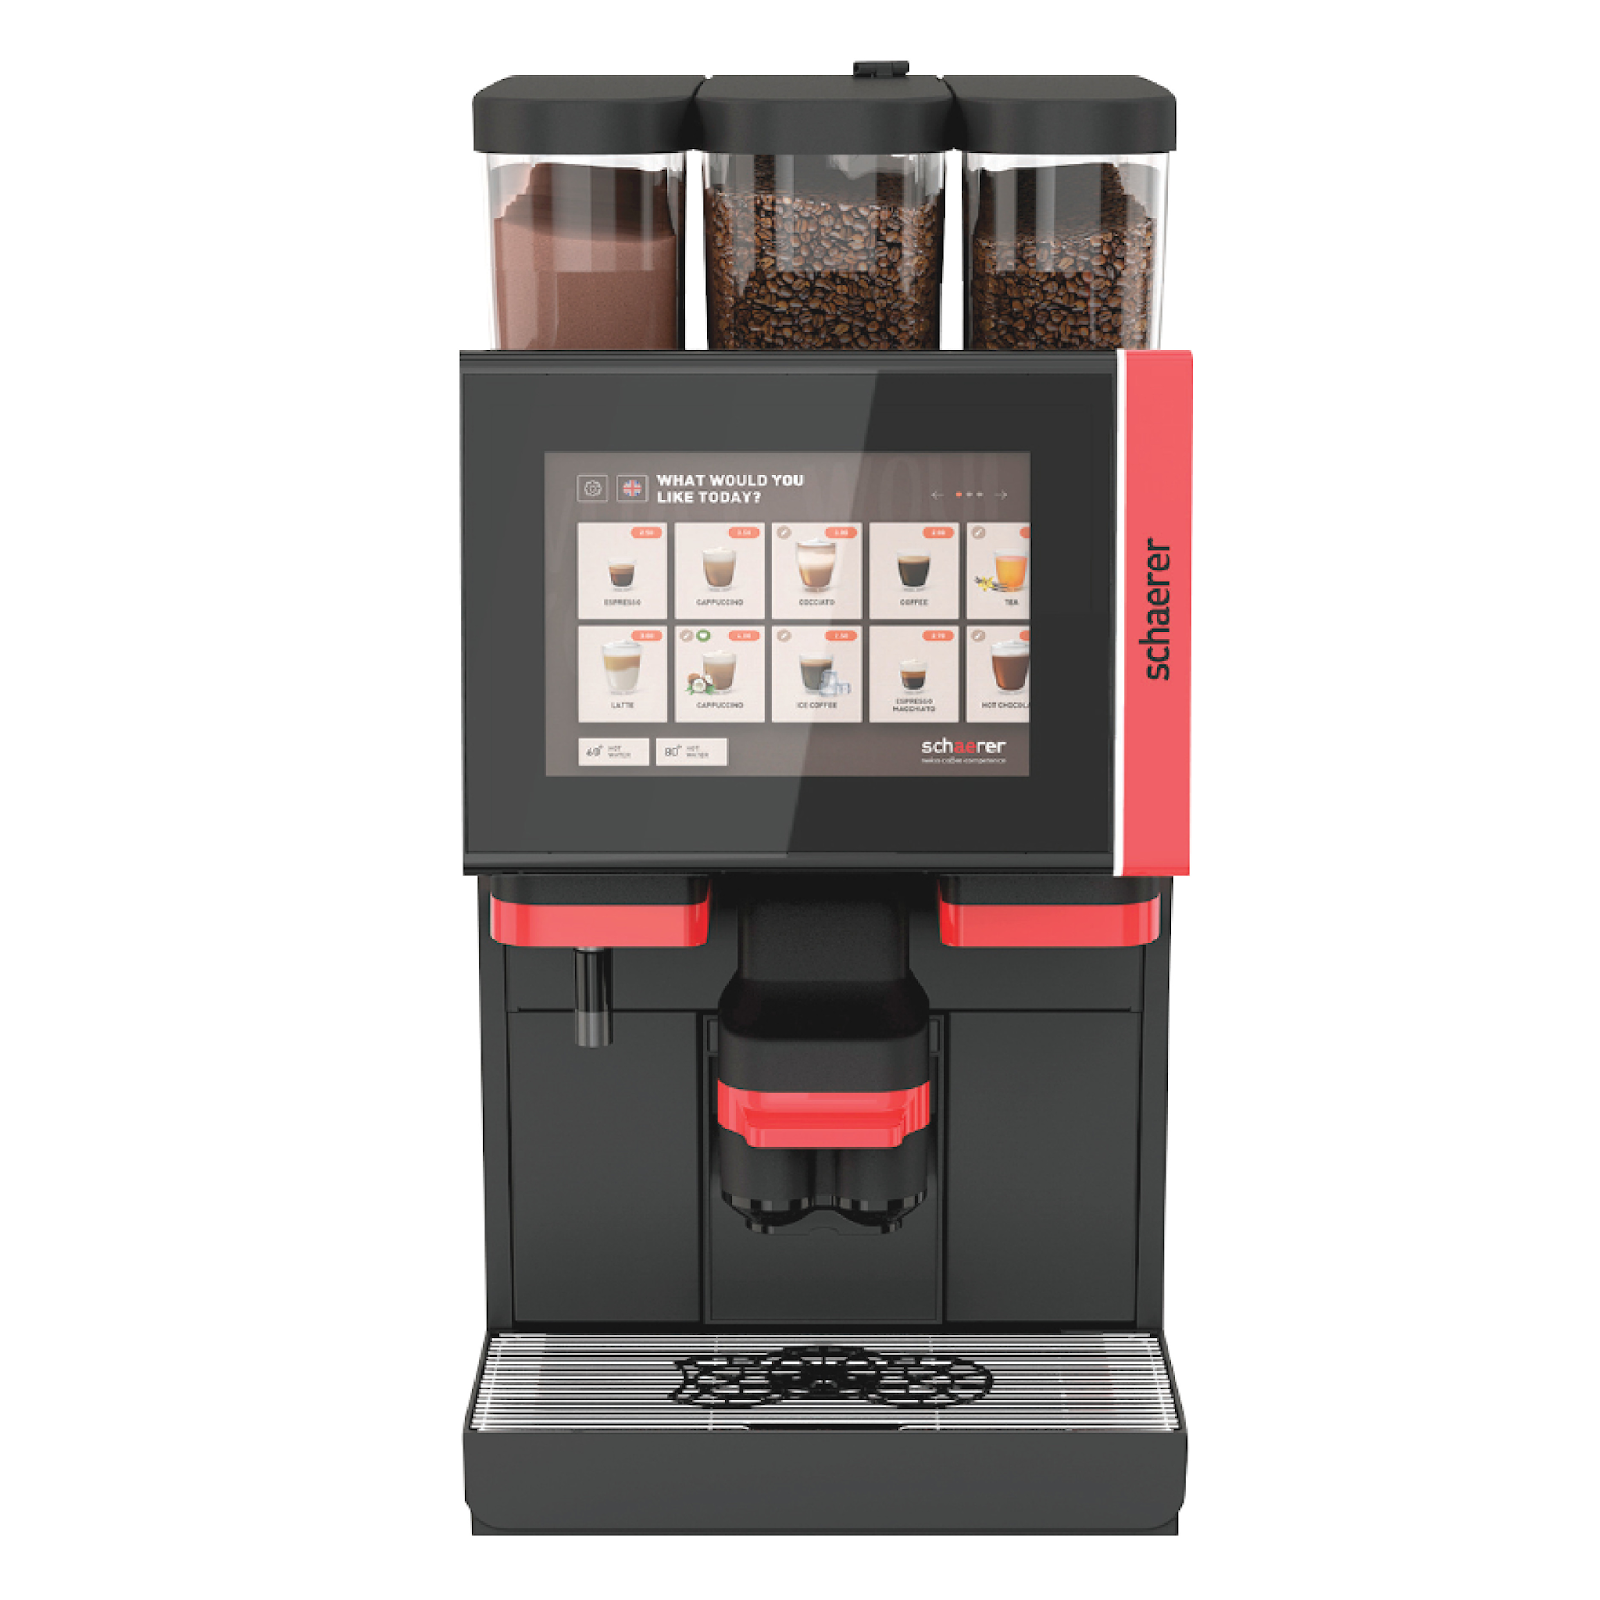 Cách lựa chọn máy pha cà phê tự động cho gia đình, văn phòng, cửa hàng, nhà hàng, khách sạn